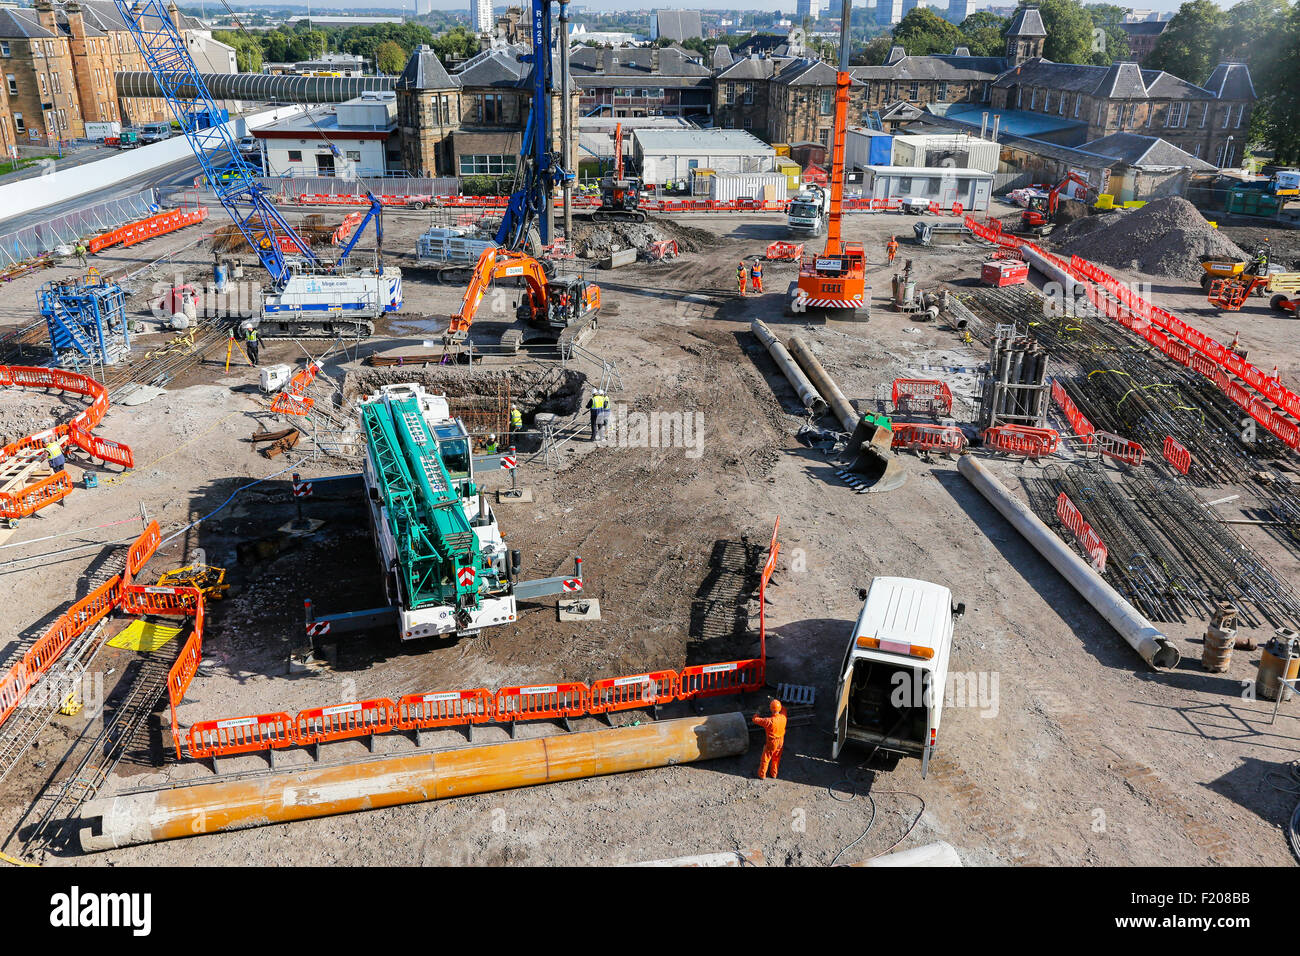 Site de construction avec des matériaux de construction et des véhicules, Glasgow, Écosse, Royaume-Uni Banque D'Images